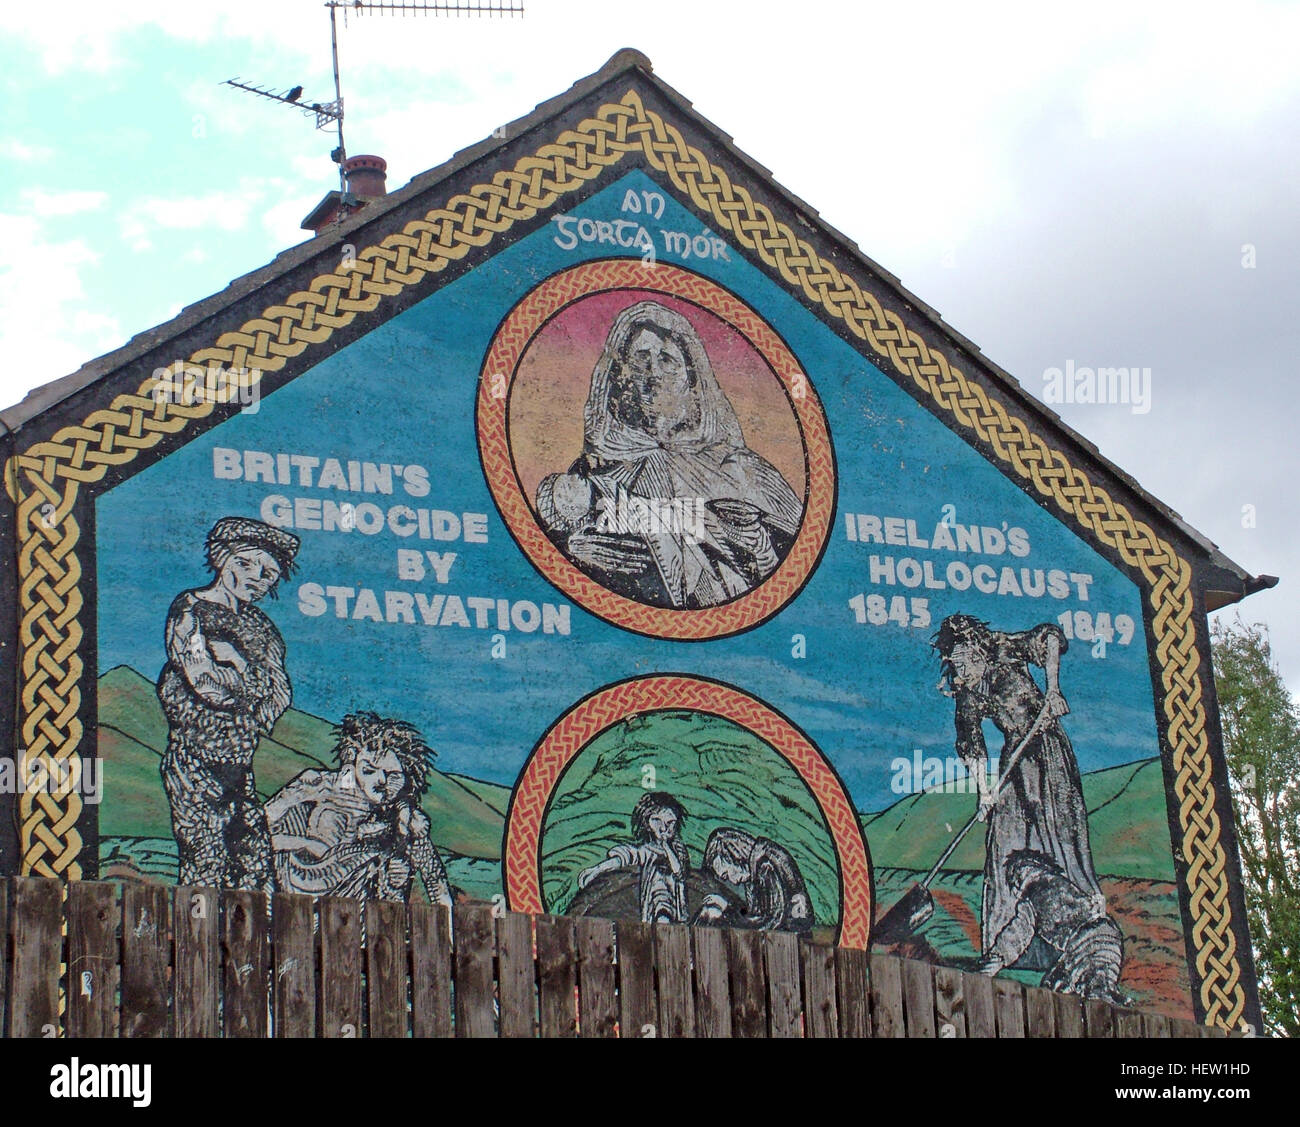 Belfast fällt Rd republikanischen Wandbild-Britains Völkermord durch Hunger, Irelands Holocaust auf Wohnsiedlung Giebelseite Stockfoto